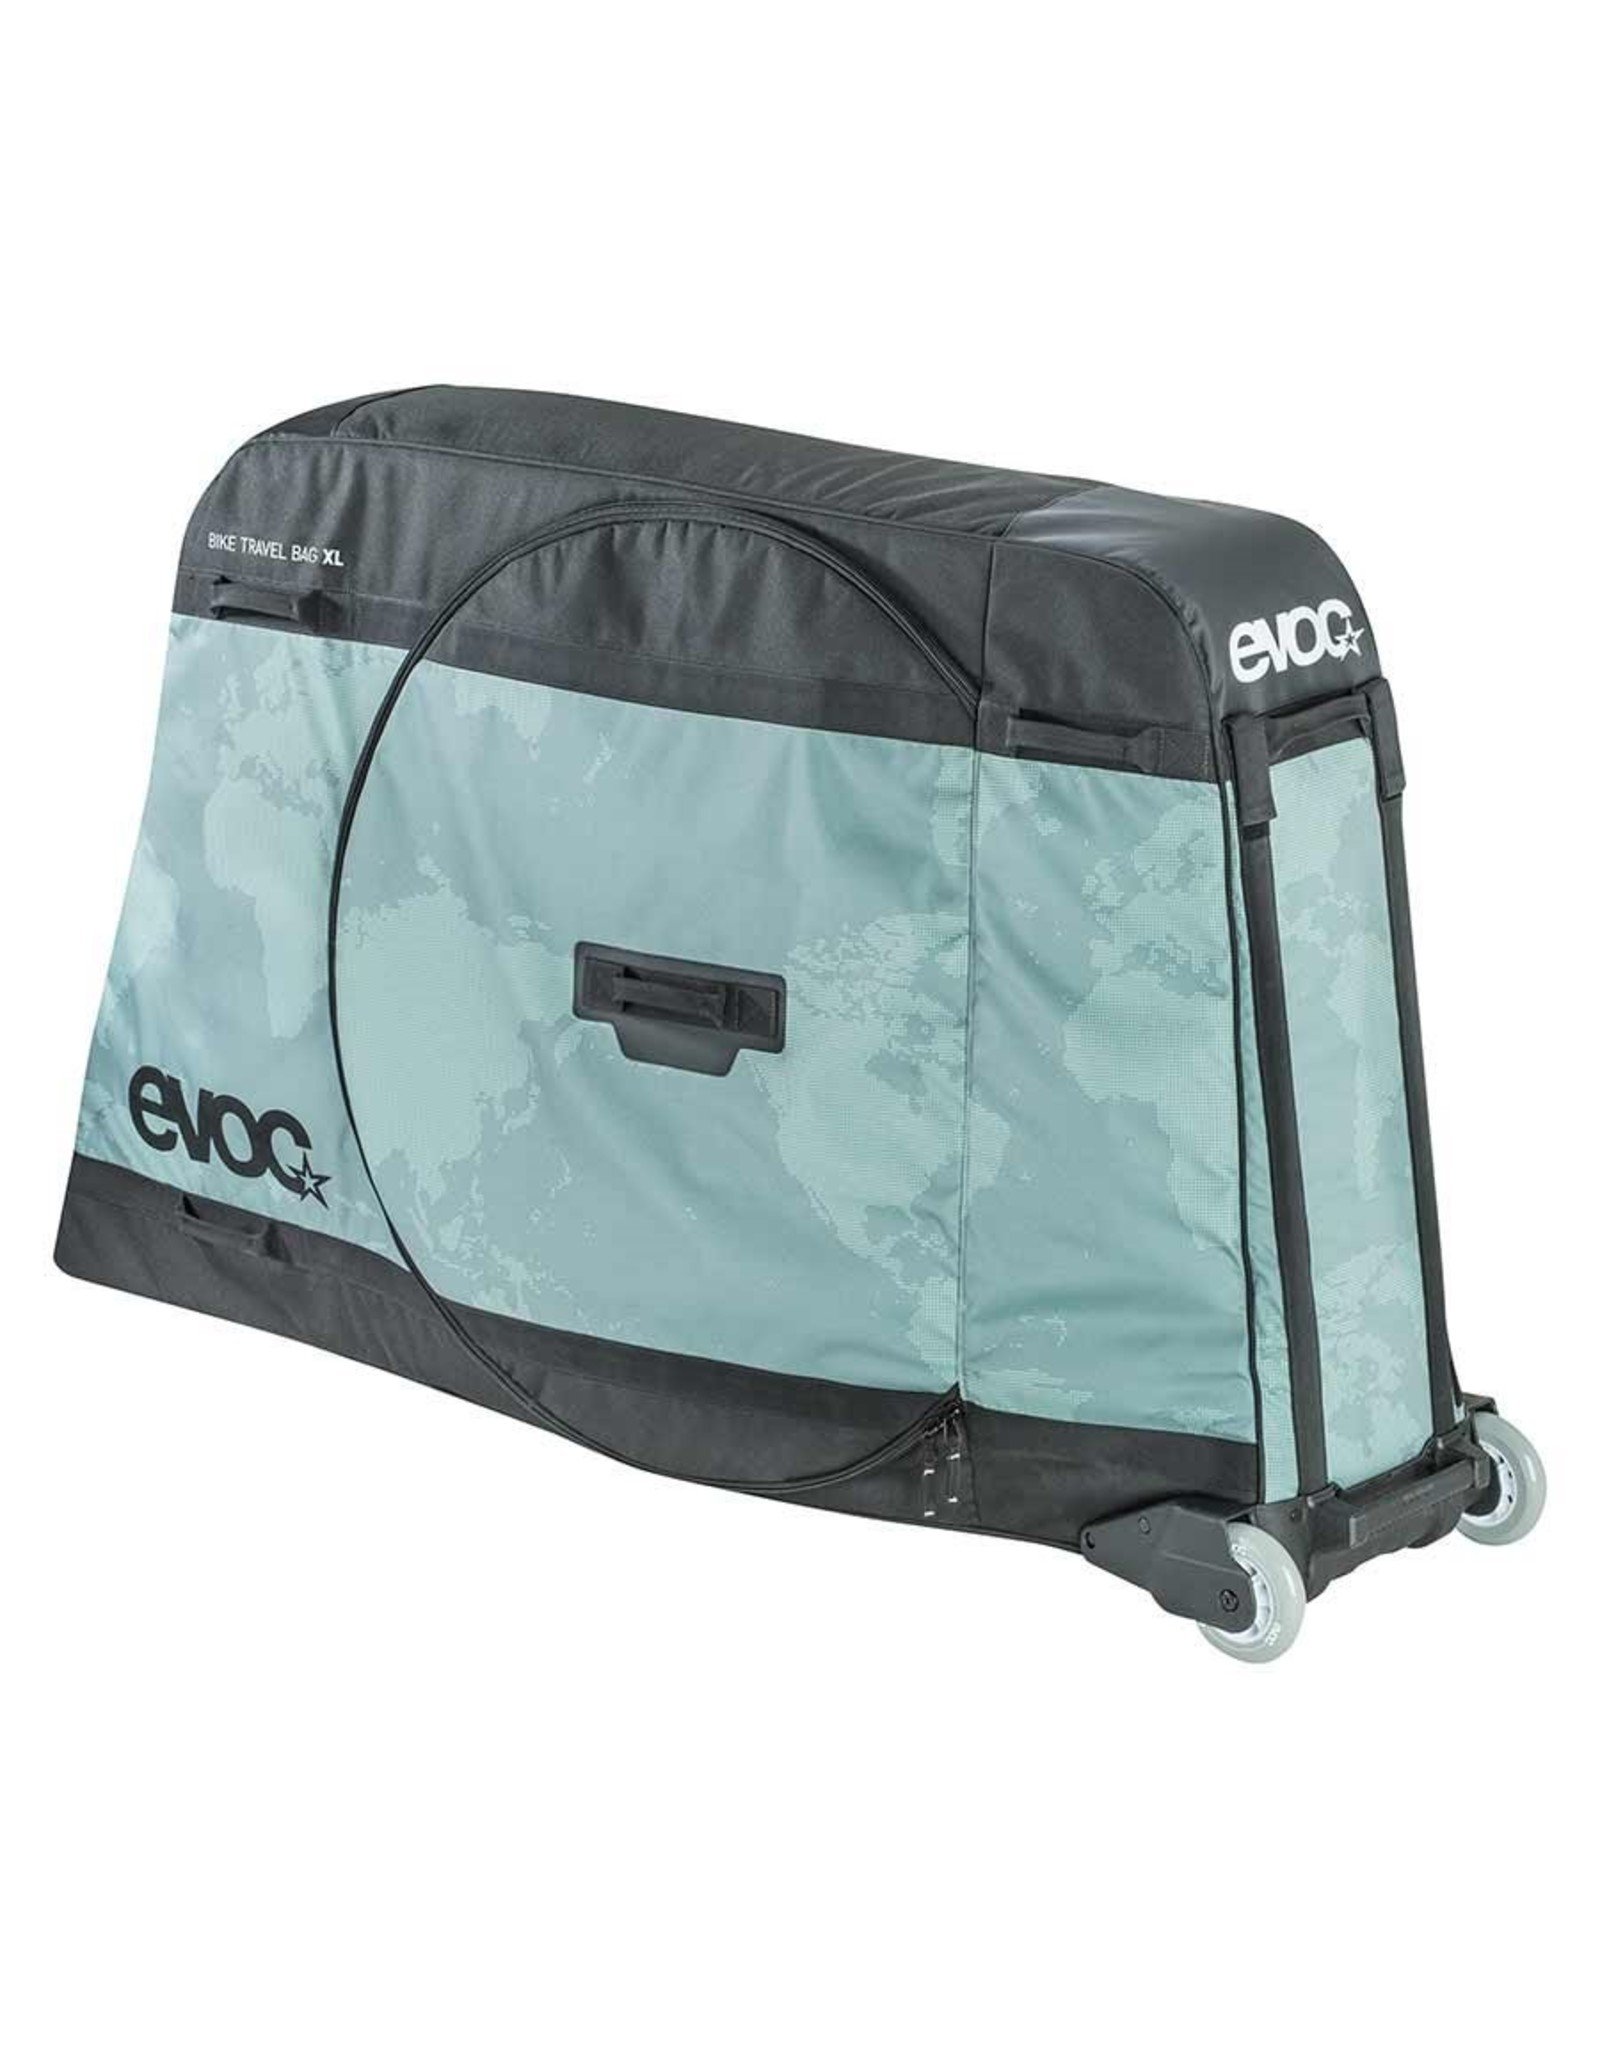 EVOC EVOC Bike Travel Bag - Olive -  XL